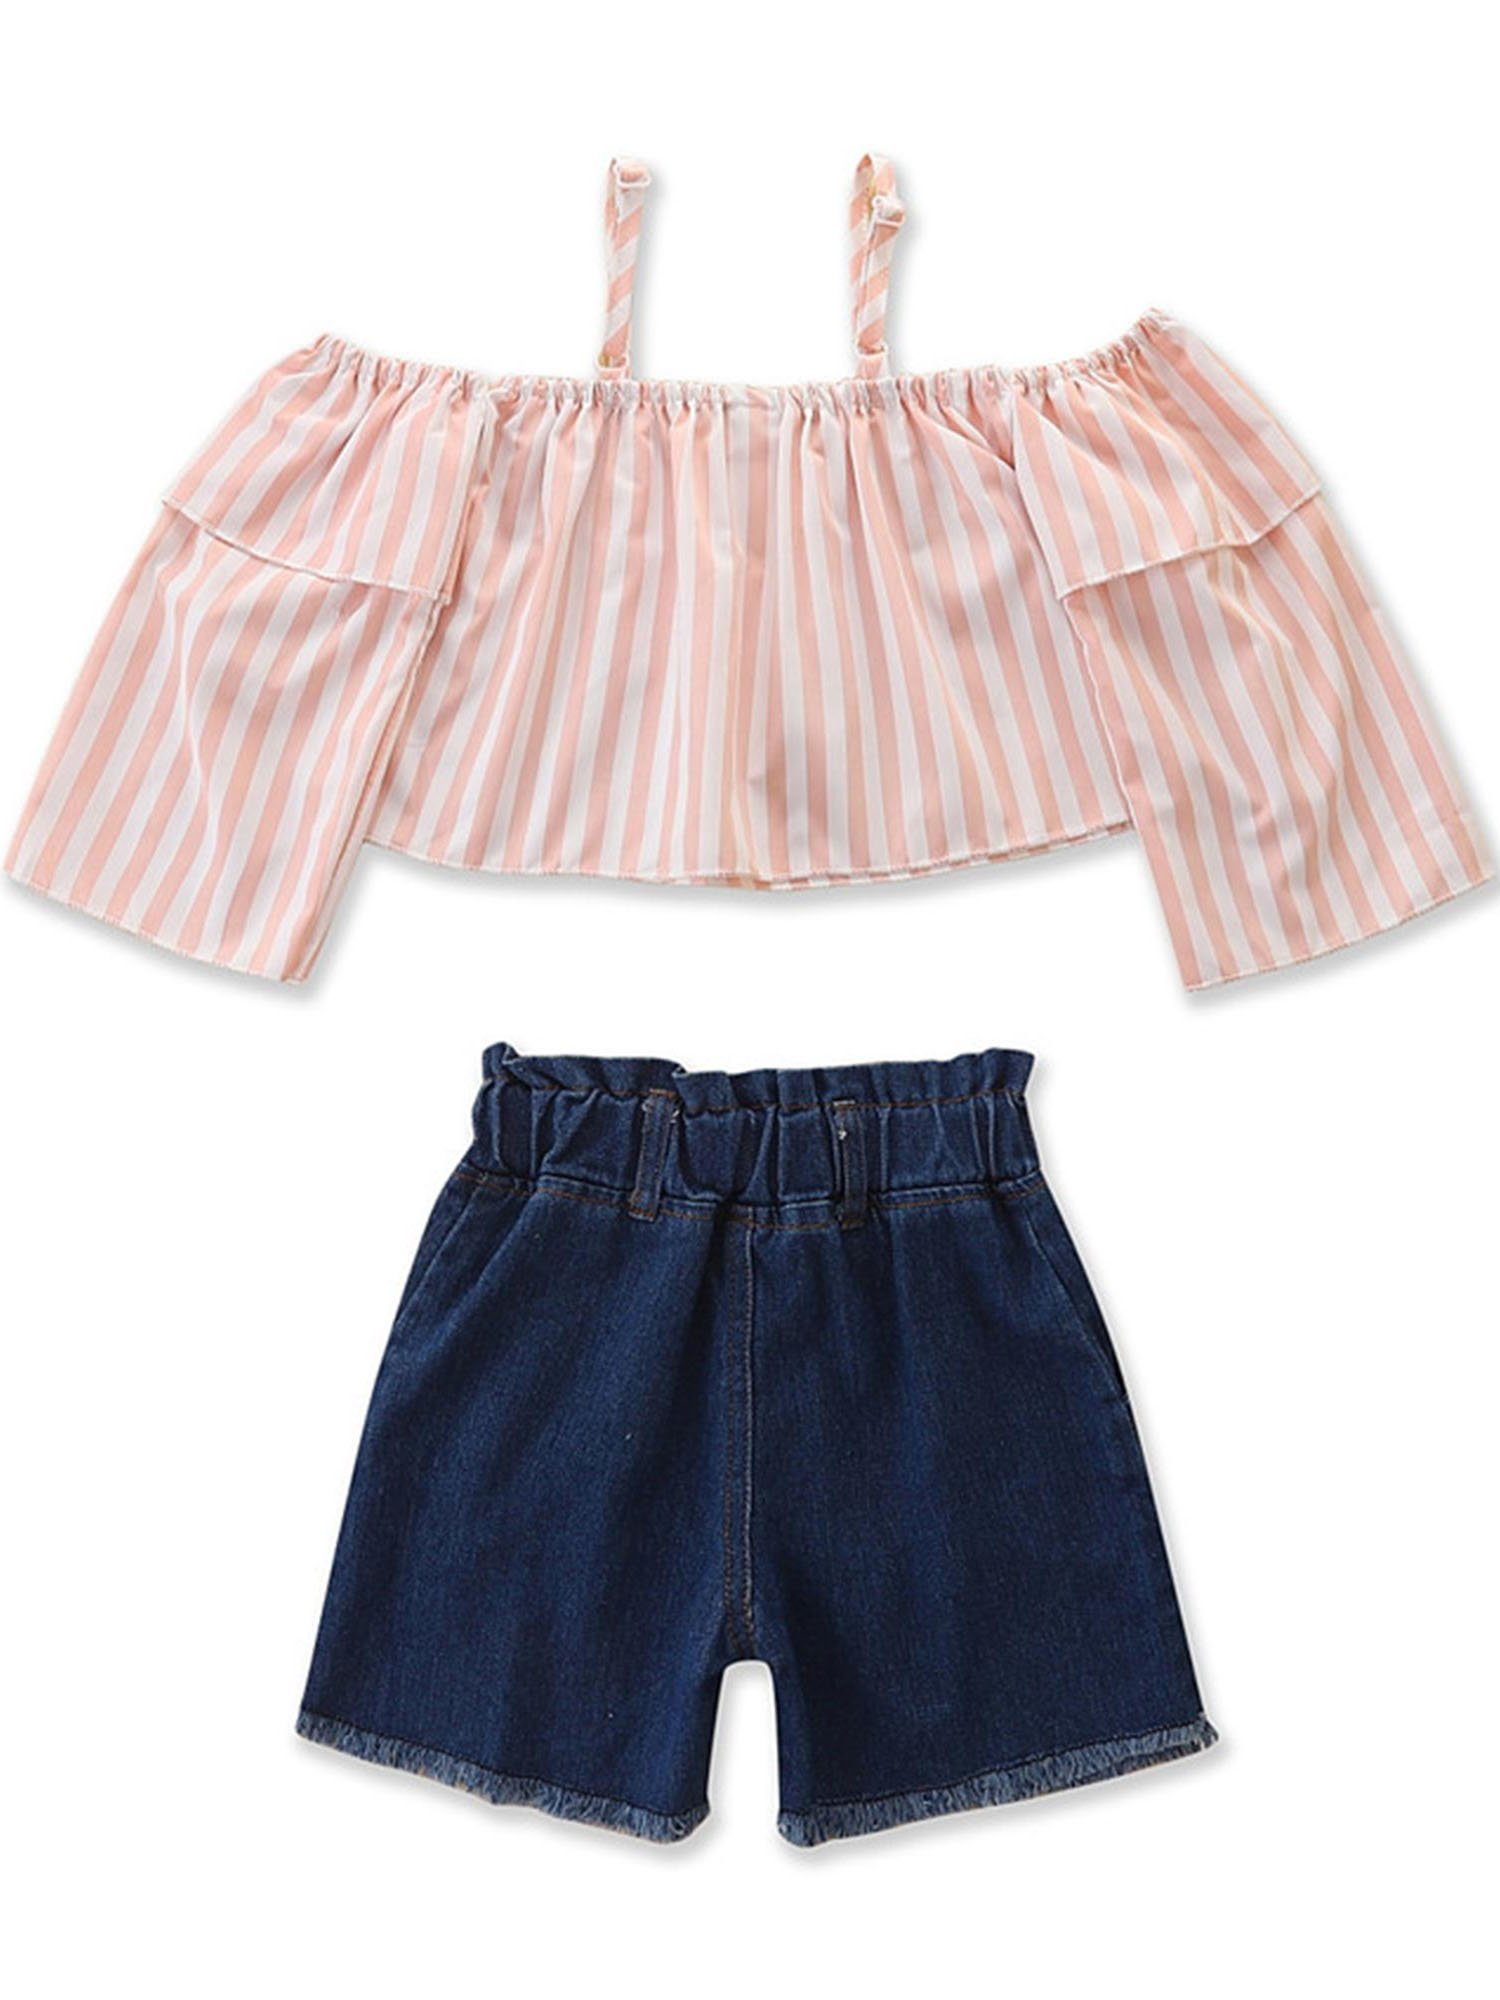 Kinder Mädchen (Gr. 50 - 92) Lapastyle Shirt & Shorts Sommeranzug für Mädchen, gestreiftes Hosenträger Oberteil und Jeansshorts